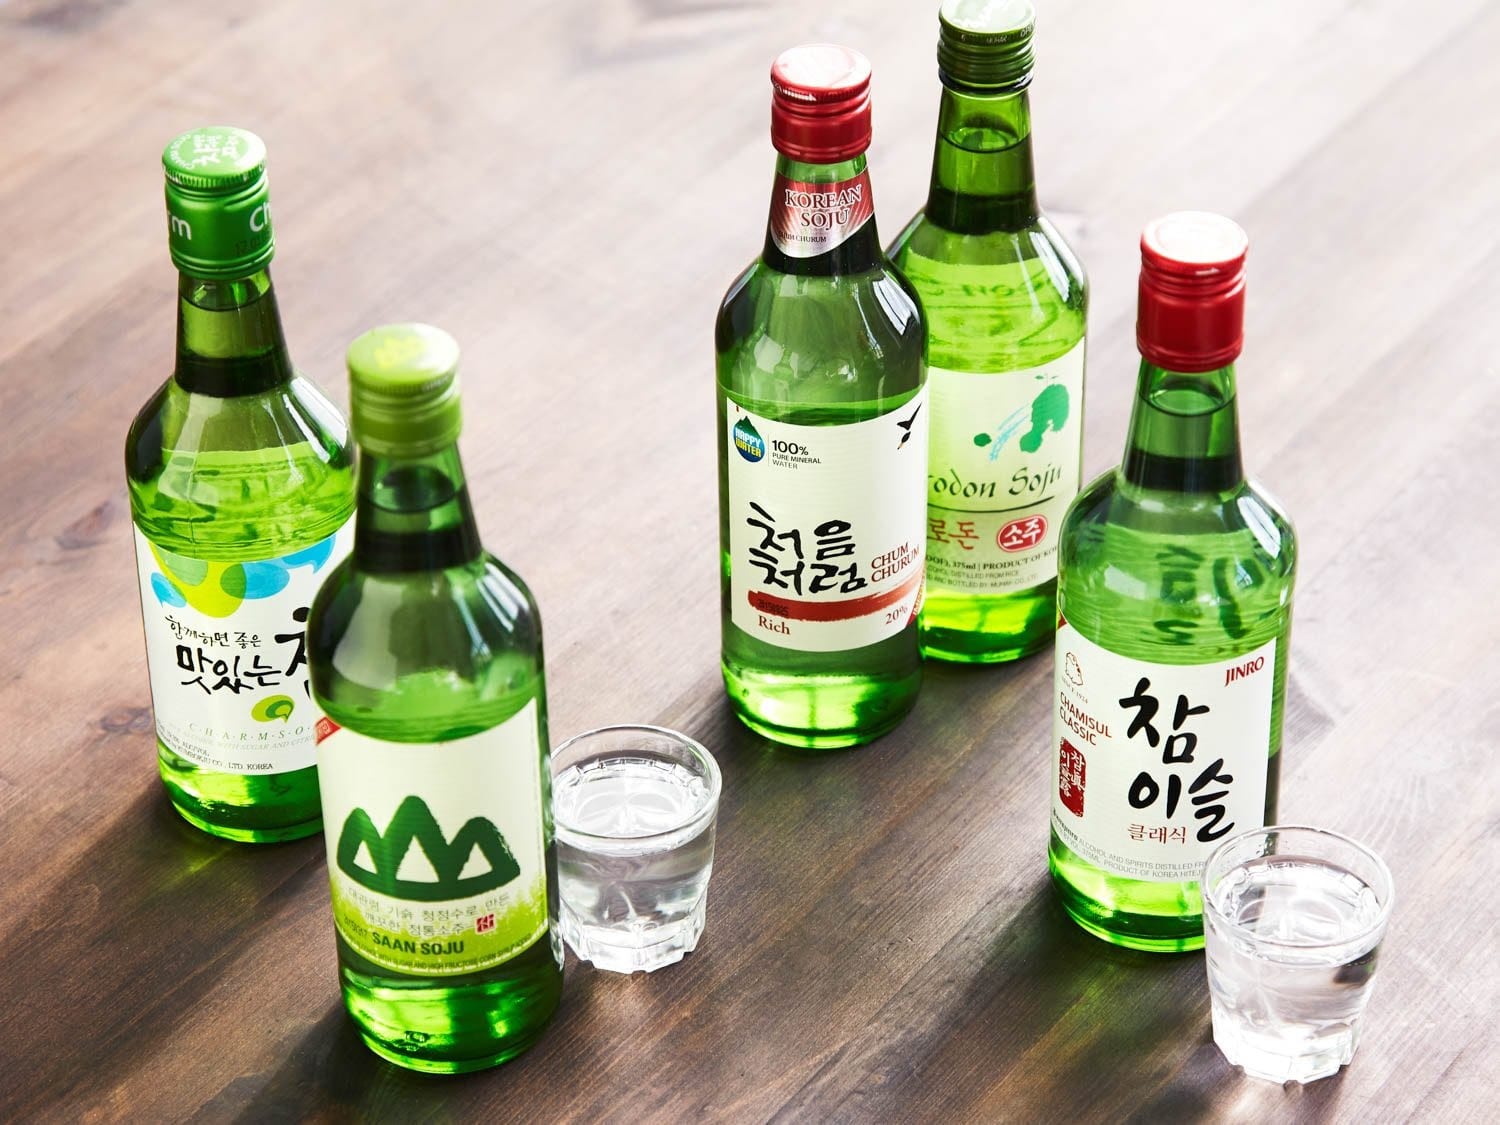 soju korea, rượu soju hàn quốc, soju trái cây, soju hàn quốc, rượu soju hàn quốc giá bao nhiêu, soju pha, các loại rượu soju hàn quốc, soju cam, rượu soju hàn quốc bao nhiêu độ, mua rượu soju hàn quốc, nơi bán rượu soju hàn quốc, rượu soju hàn quốc vinmart, soju các vị, giá bán rượu soju hàn quốc, soju sor, cách uống rượu soju hàn quốc